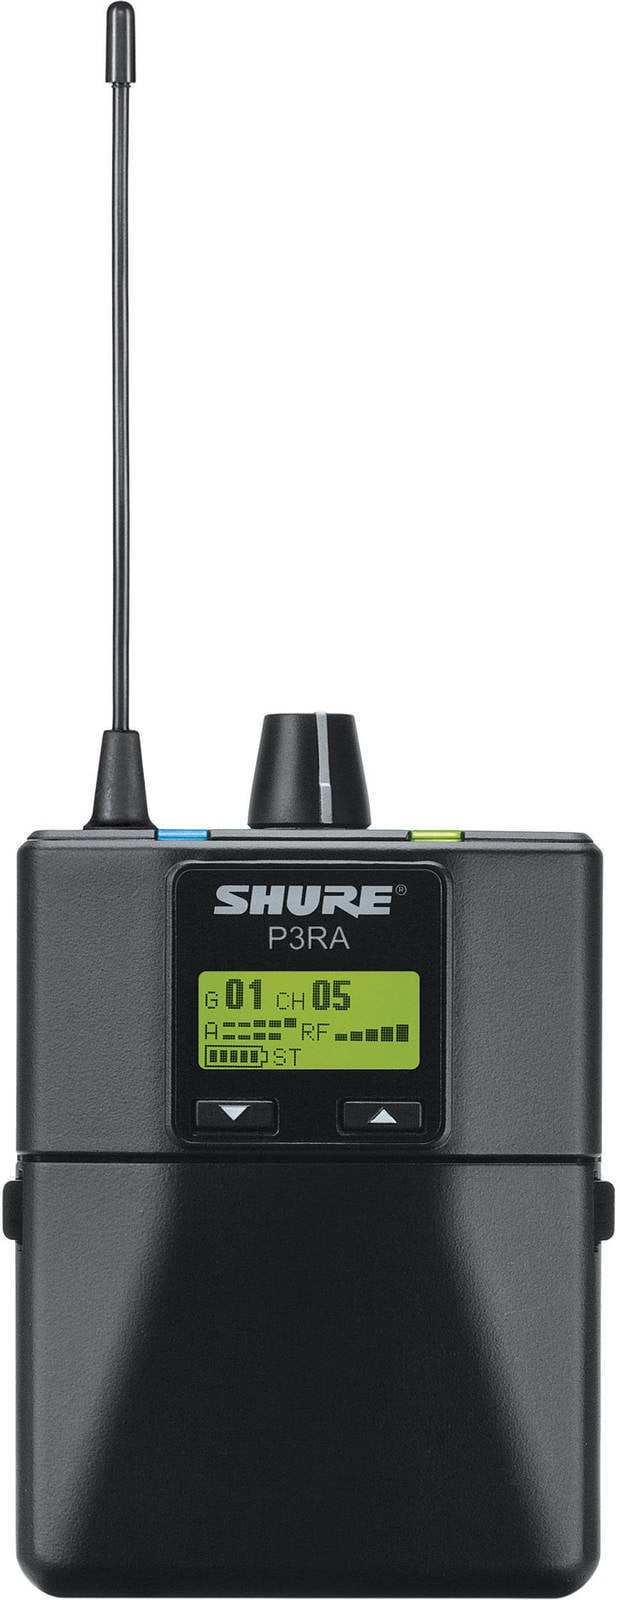 In-Ear Einzelkomponente Shure P3RA-H20 - PSM 300 Bodypack Receiver H20: 518–542 MHz